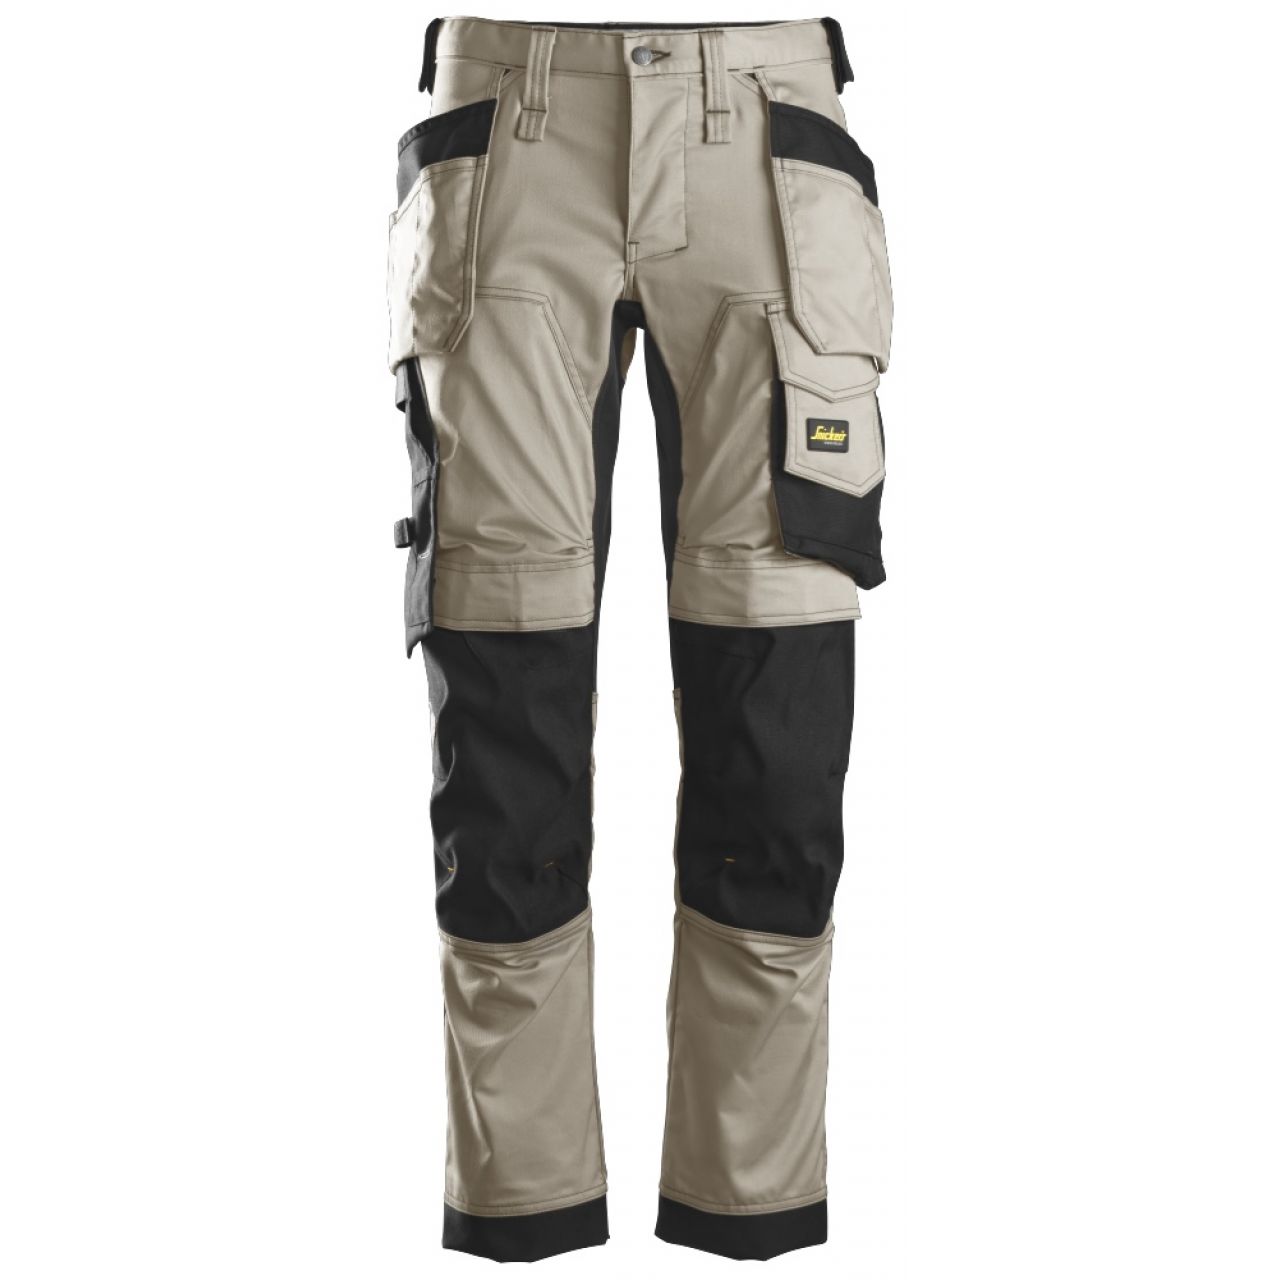 6241 Pantalones largos de trabajo elásticos con bolsillos flotantes AllroundWork beige-negro talla 44